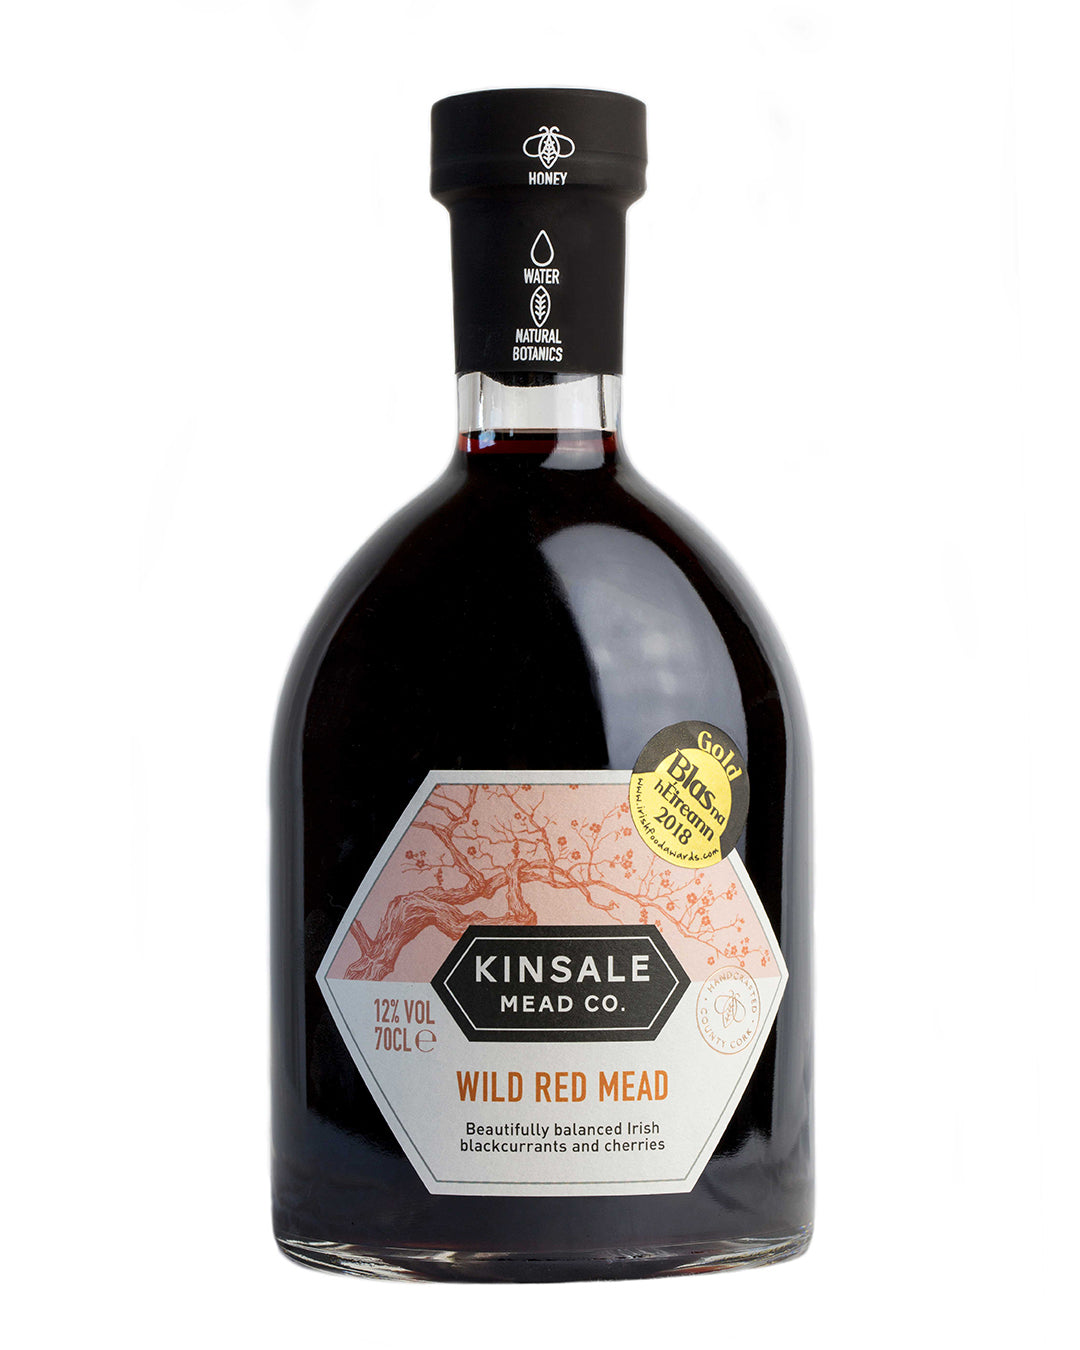 Kinsale Mead Co - Kinsale Wild Red Mead  700ml, 12% ABV